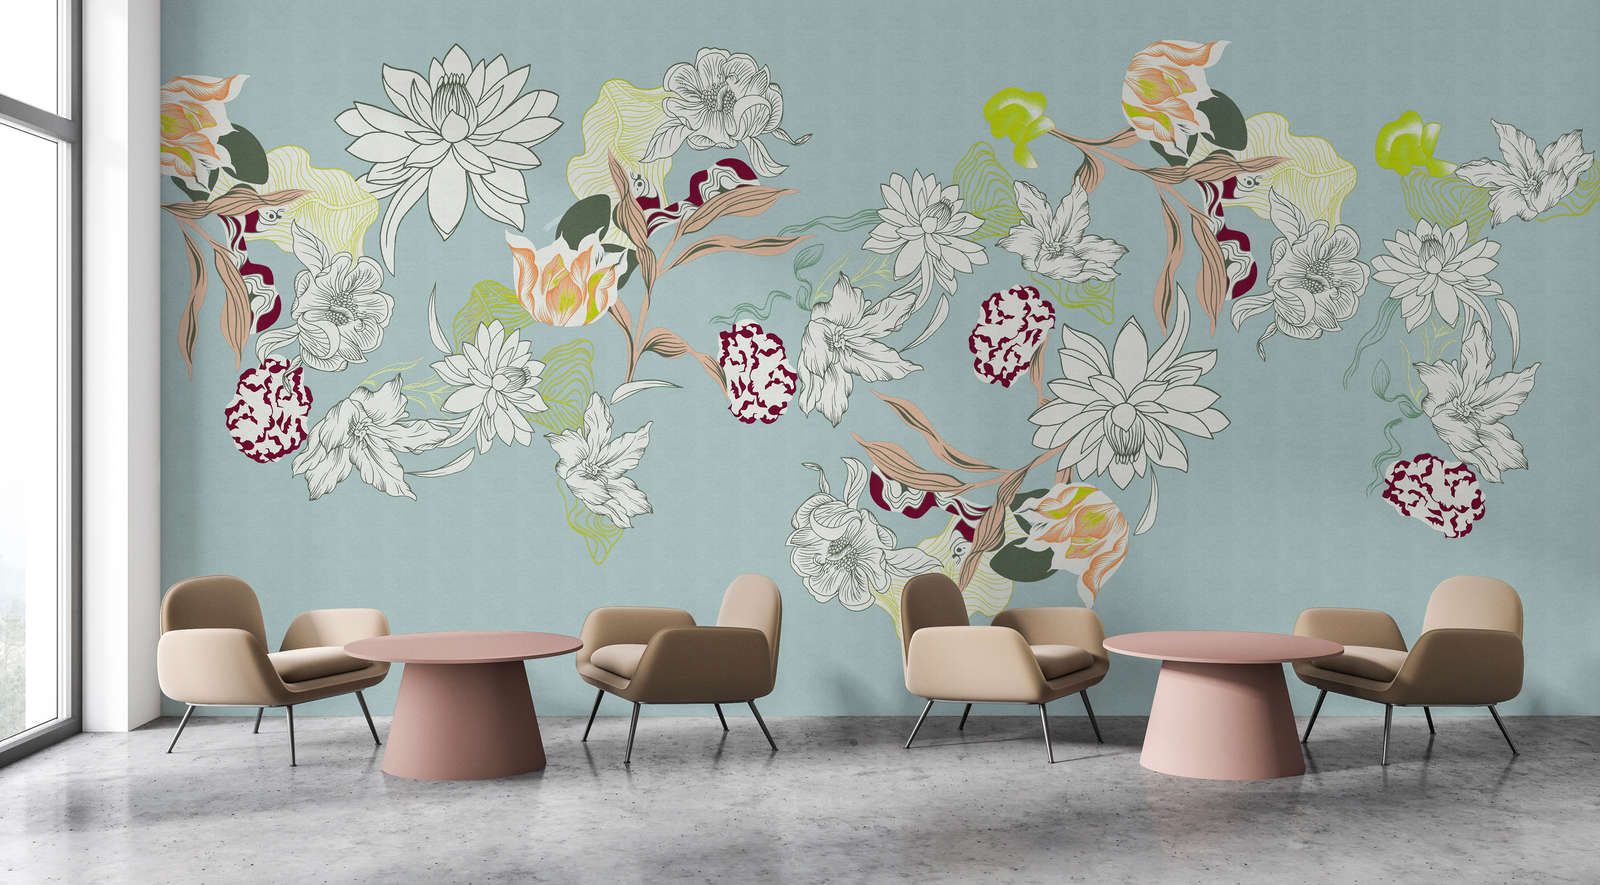             Fotomural »botany 2« - Motivos florales abstractos con toques verdes sobre una sutil textura de lino - Tela no tejida de textura ligera
        